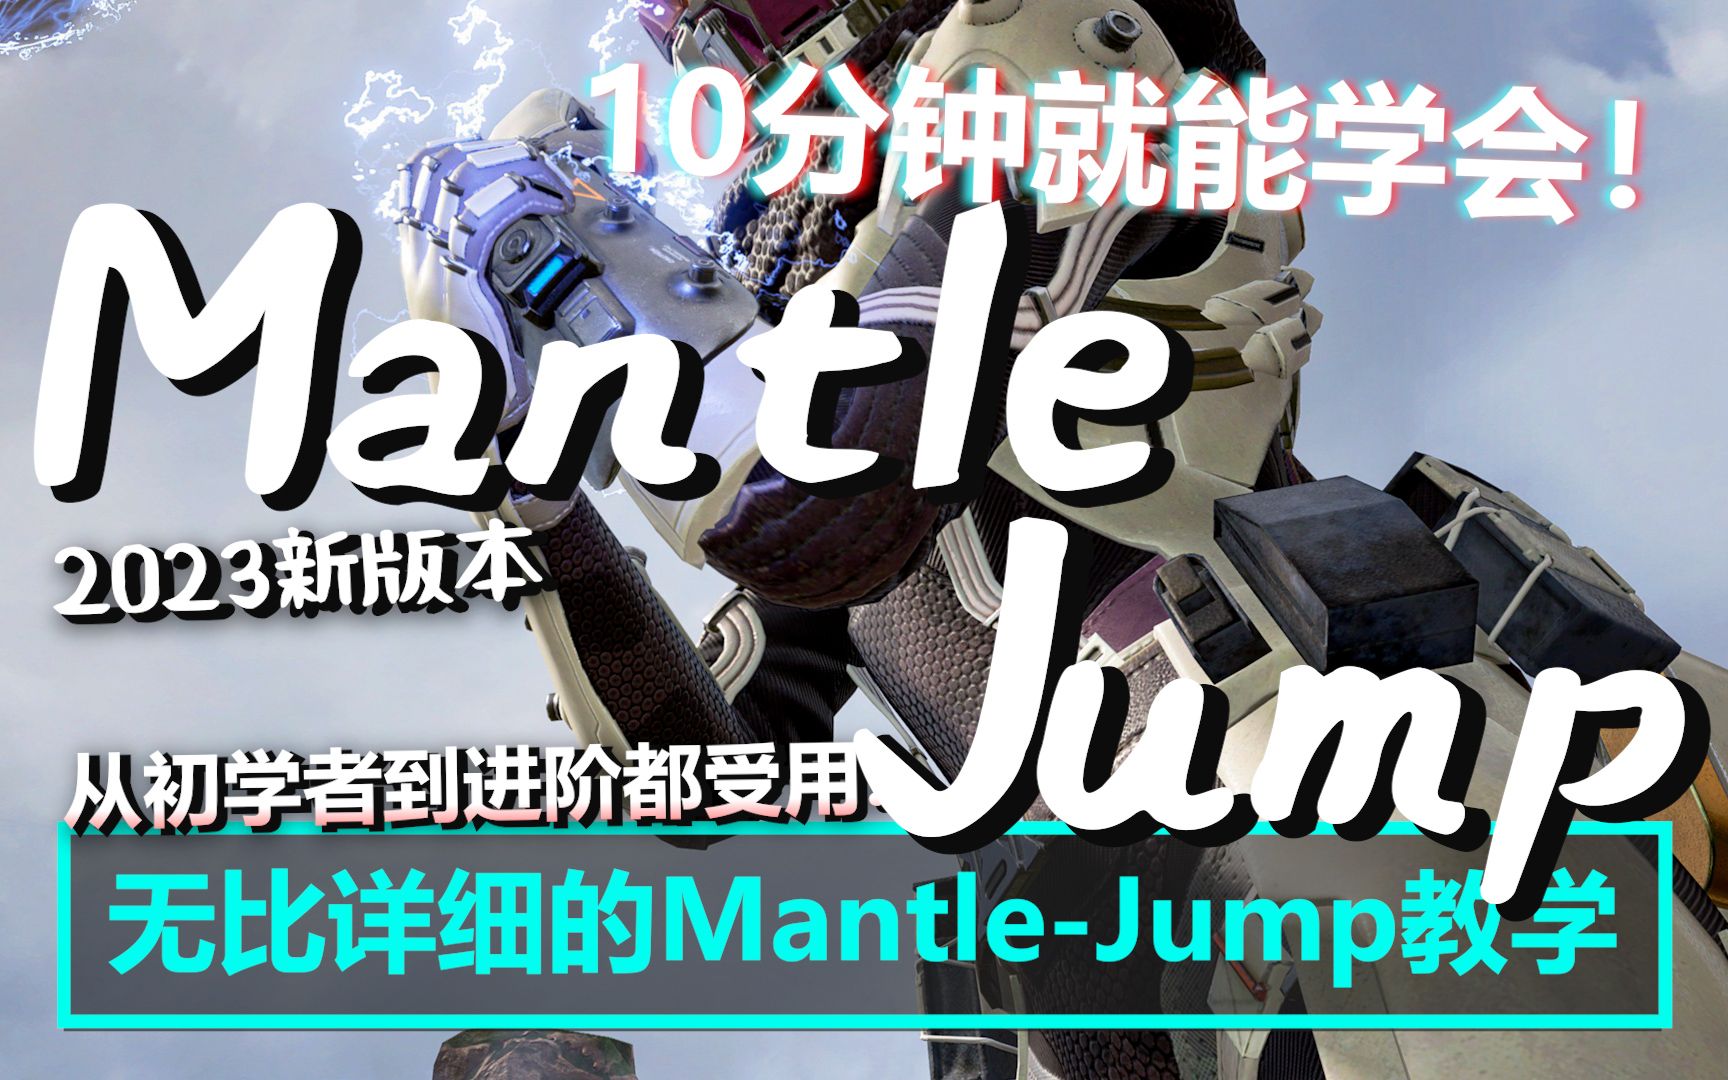 新版本Mantle-Jump详细教学！成功率高达8成？10分钟就能学会！| Apex Legends S16 | mimo咪摸 | MantleJump2023